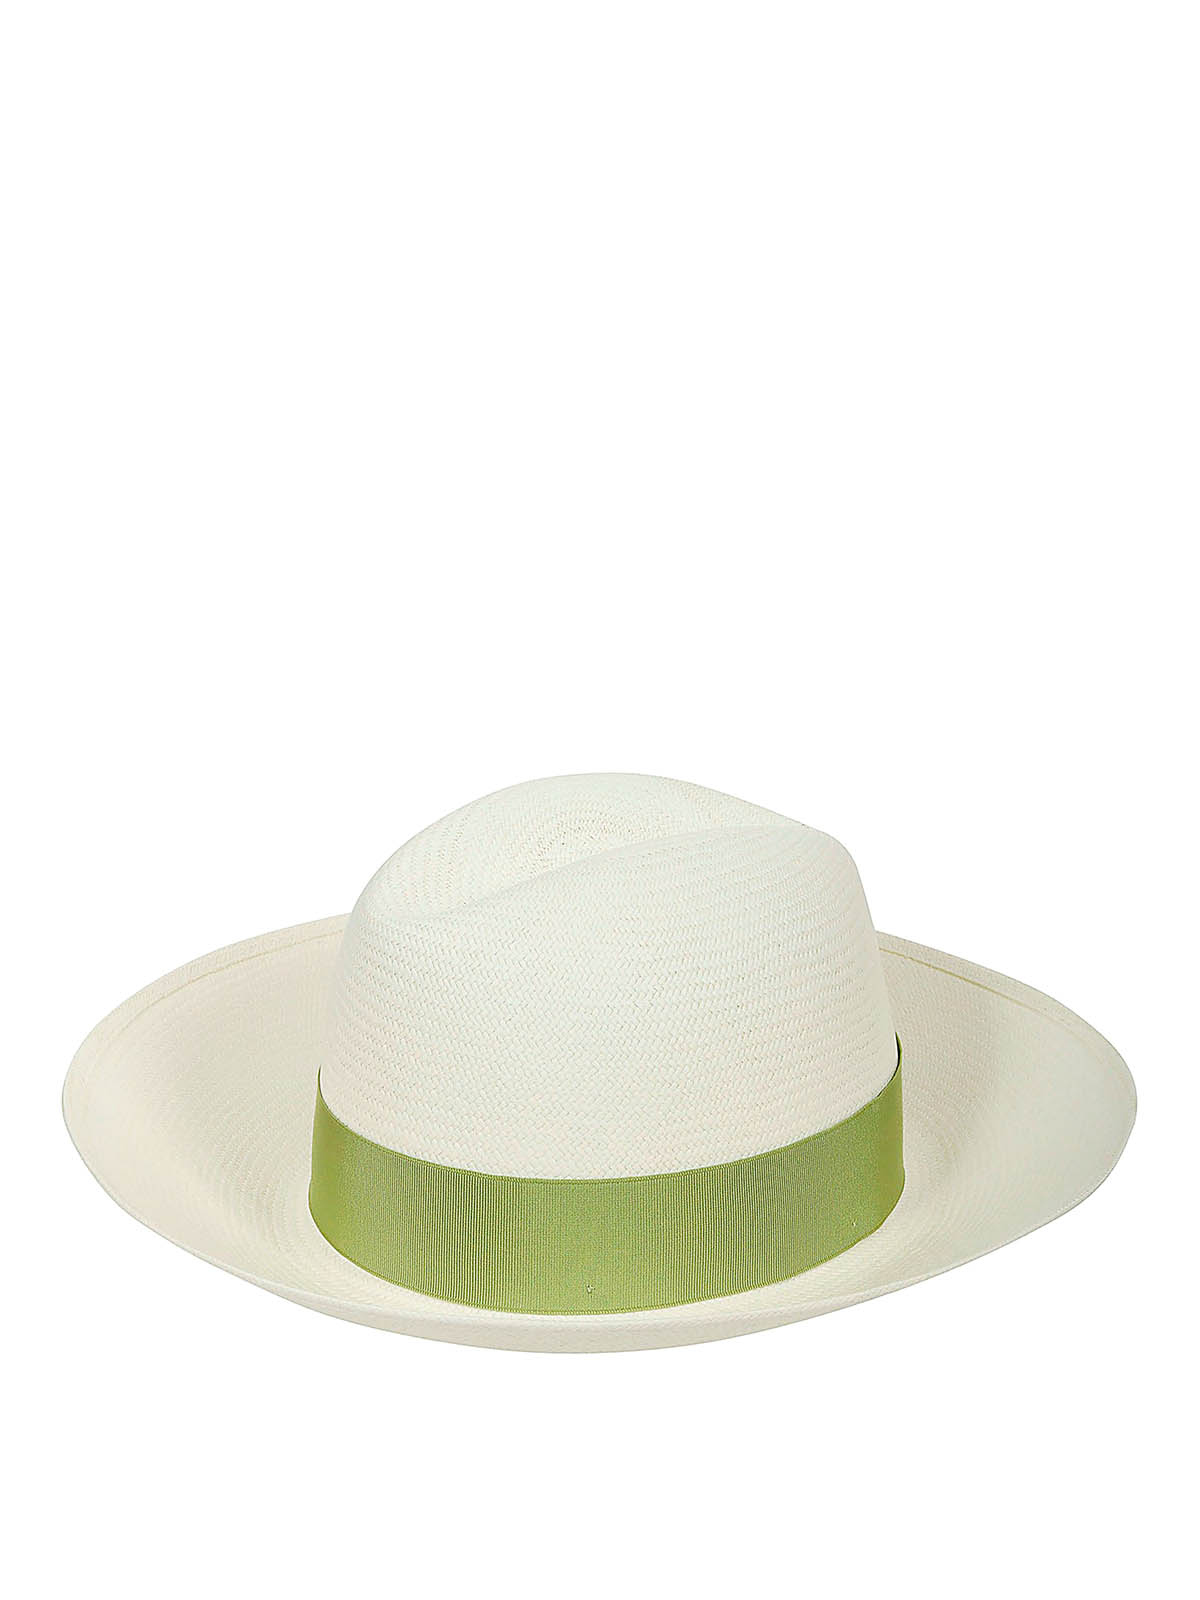 Tranen serveerster Beangstigend Hats & caps Borsalino - Claudette Panama hat - 2319790011 | iKRIX.com